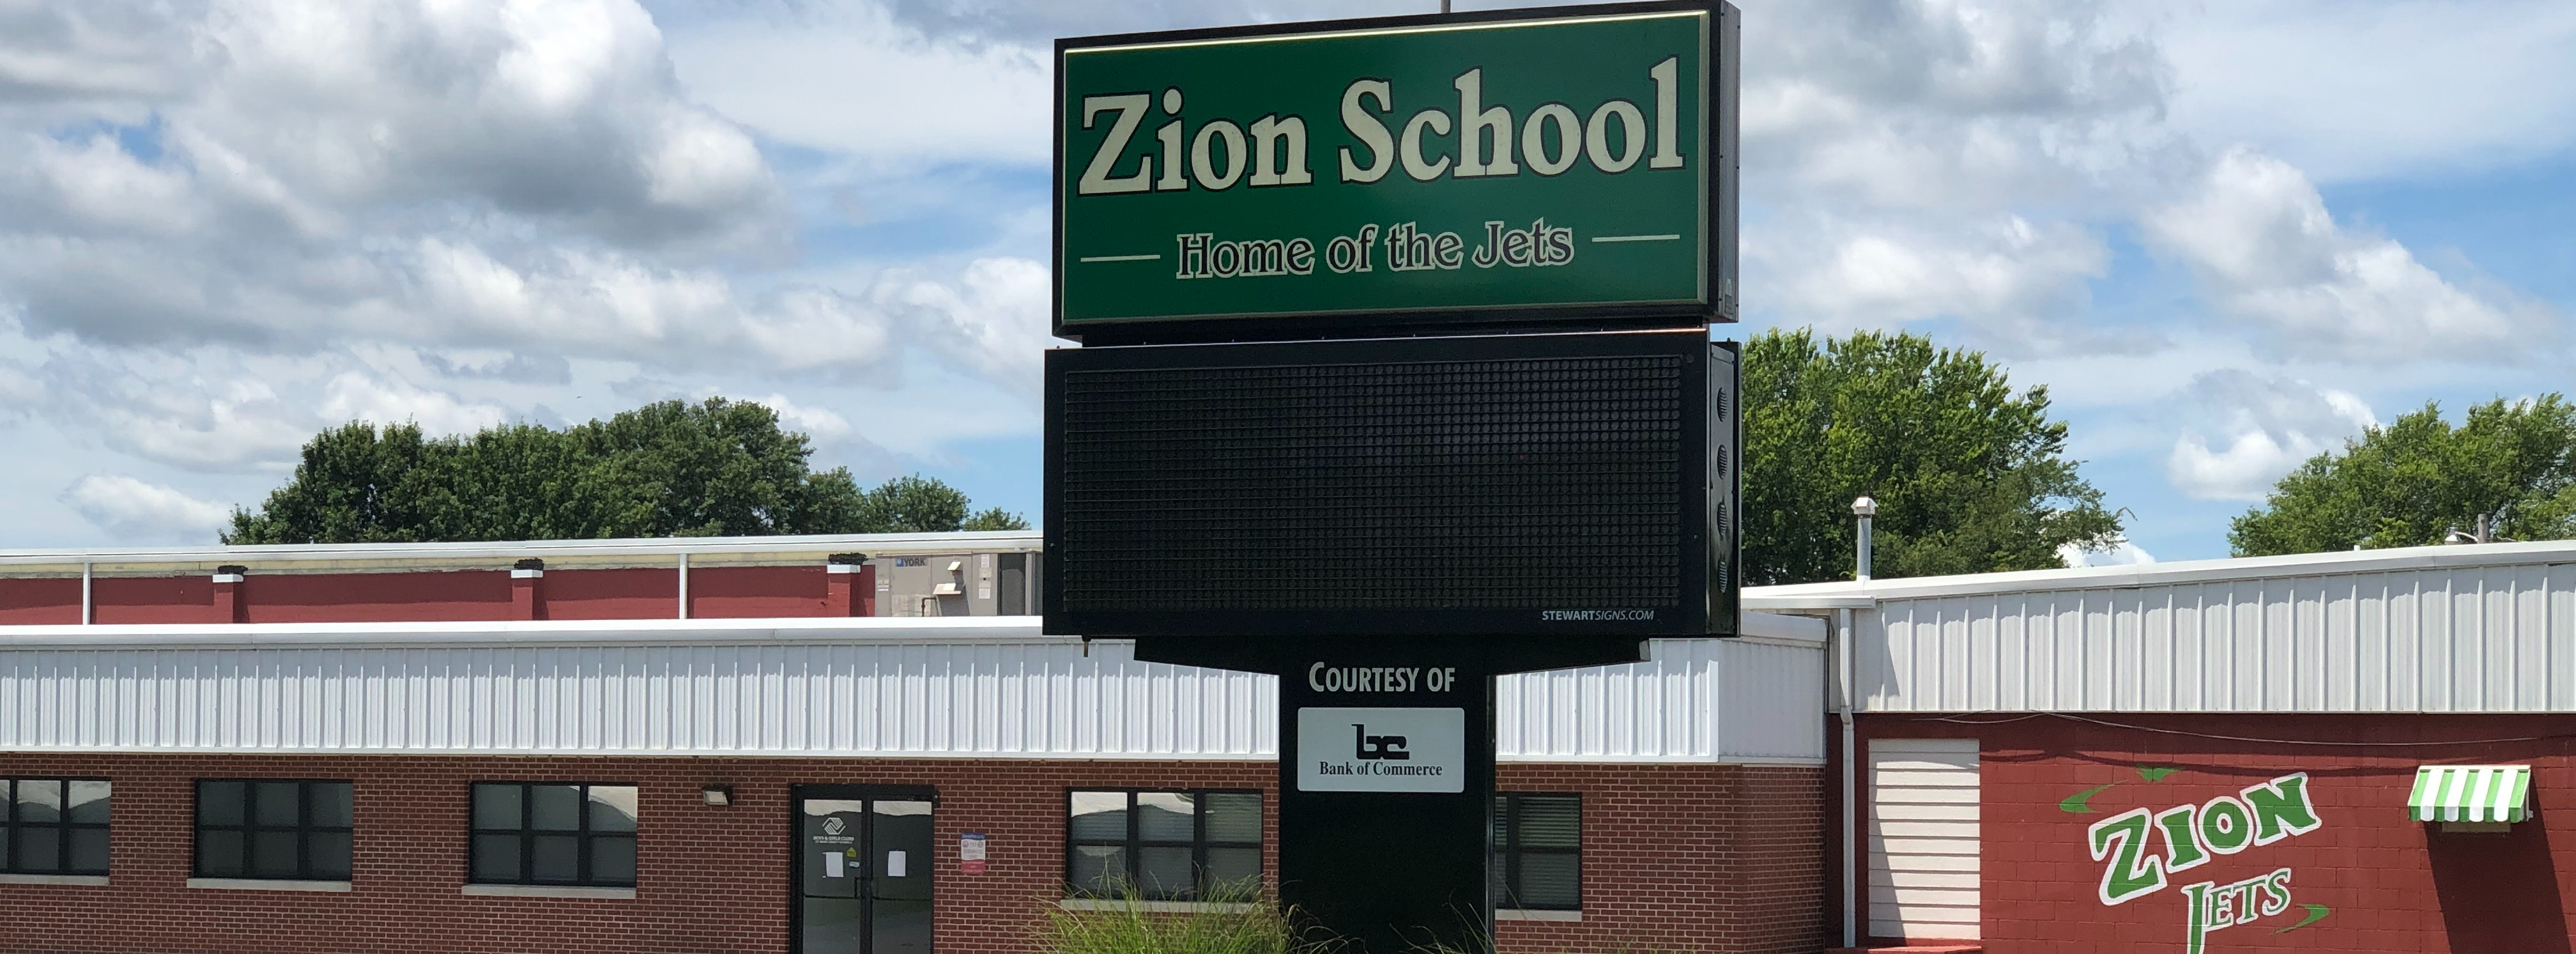 Zion Public School Home